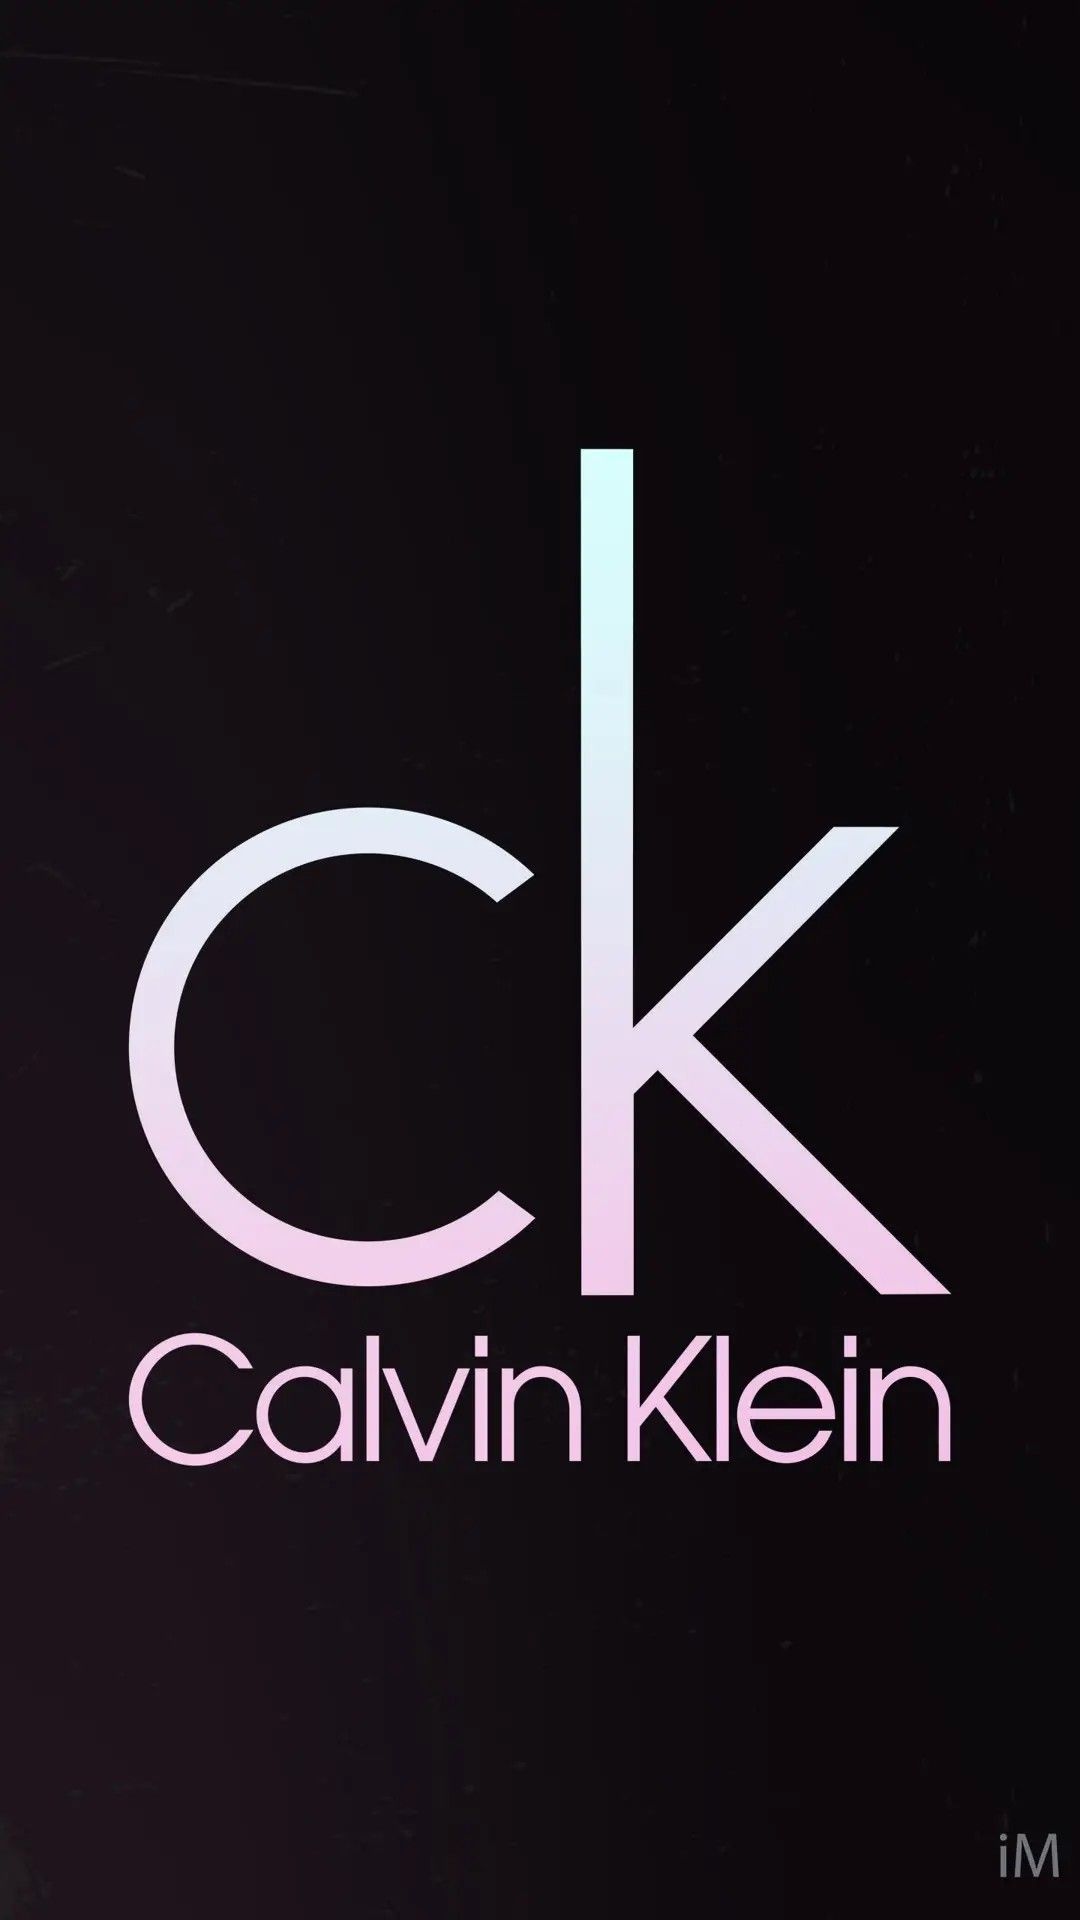 On Logos Calvin Klein Ck